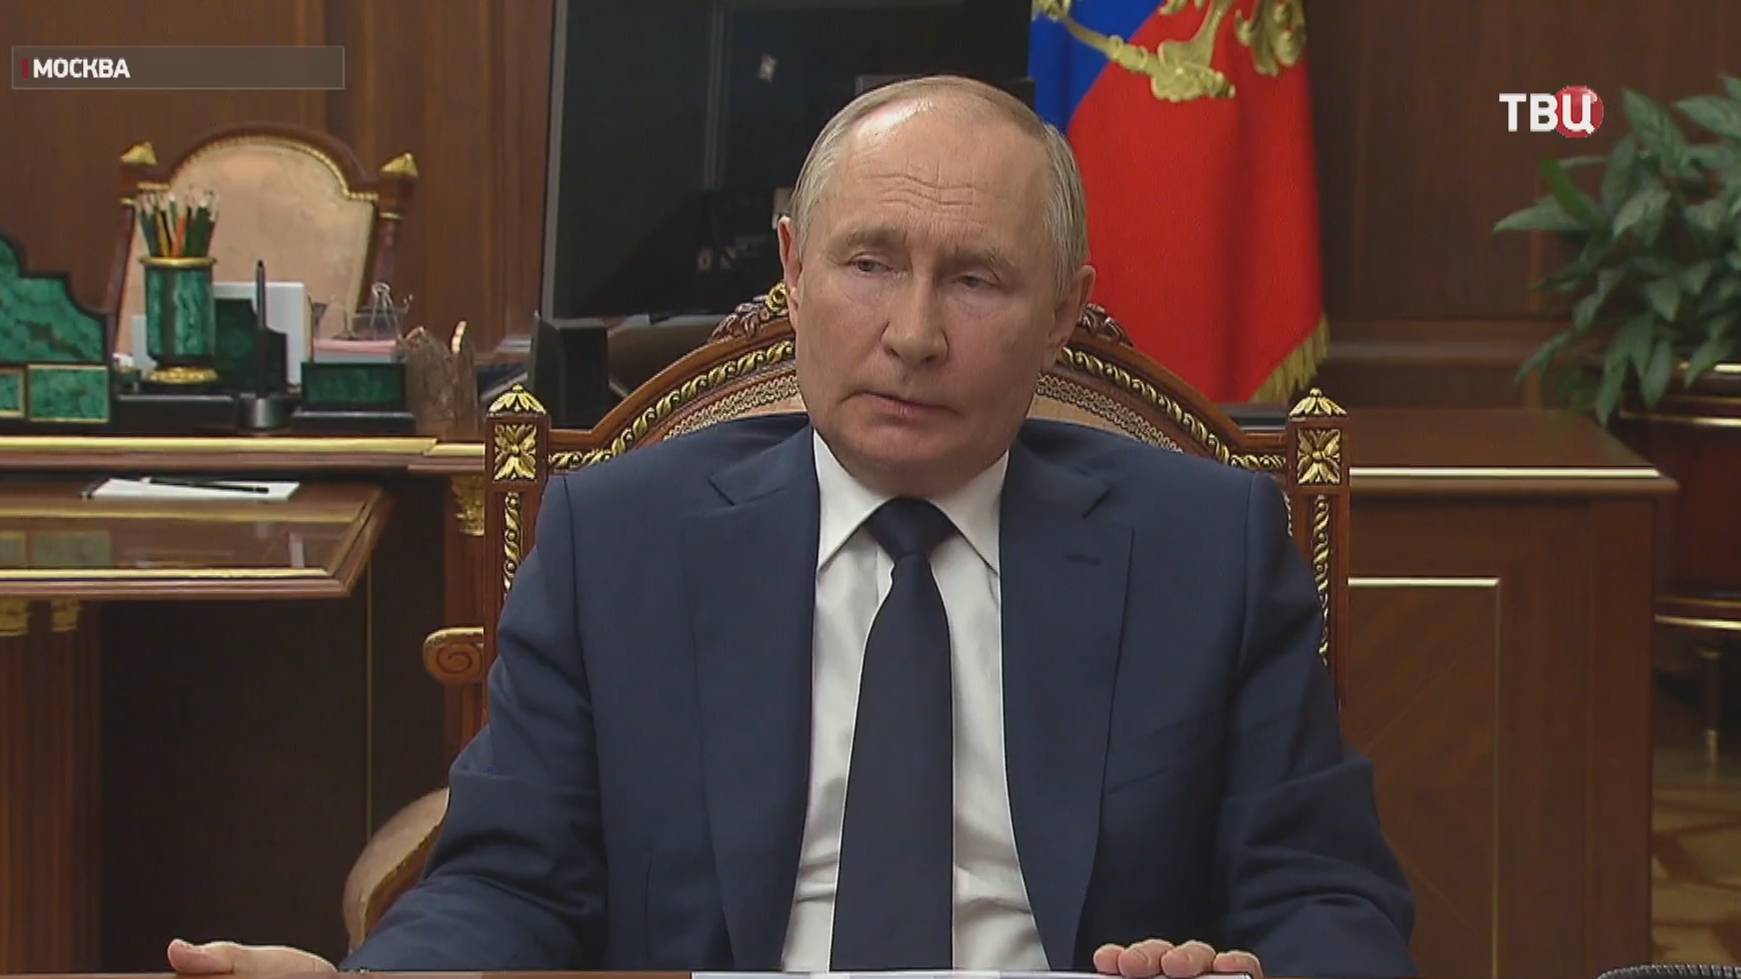 Путин обсудил с главой "Ростеха" укрепление обороноспособности страны / События на ТВЦ